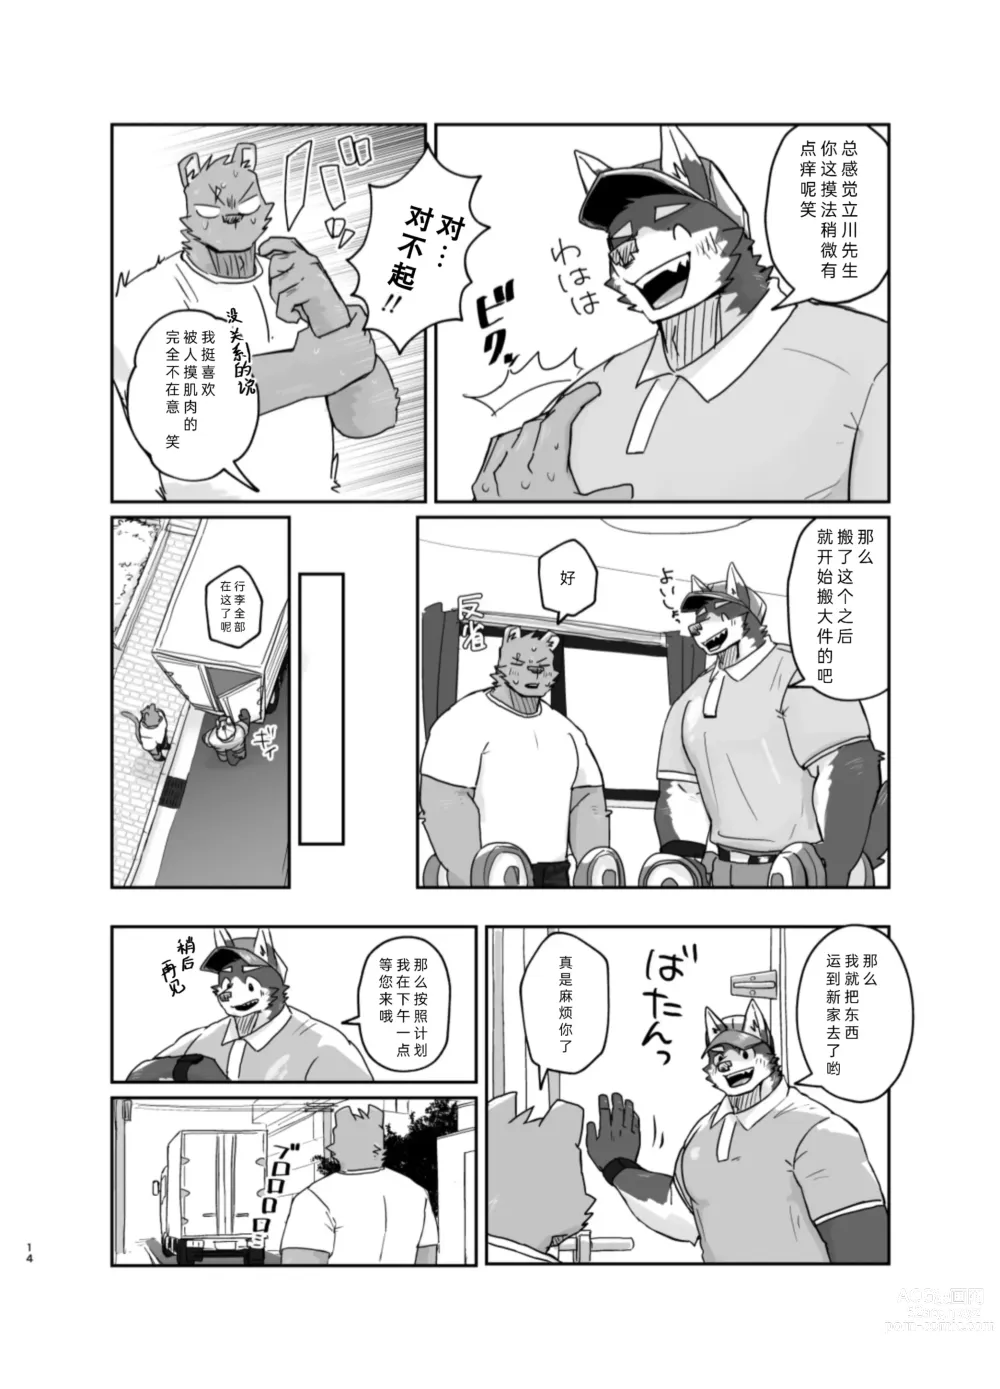 Page 14 of doujinshi 搬家的十分钟服务